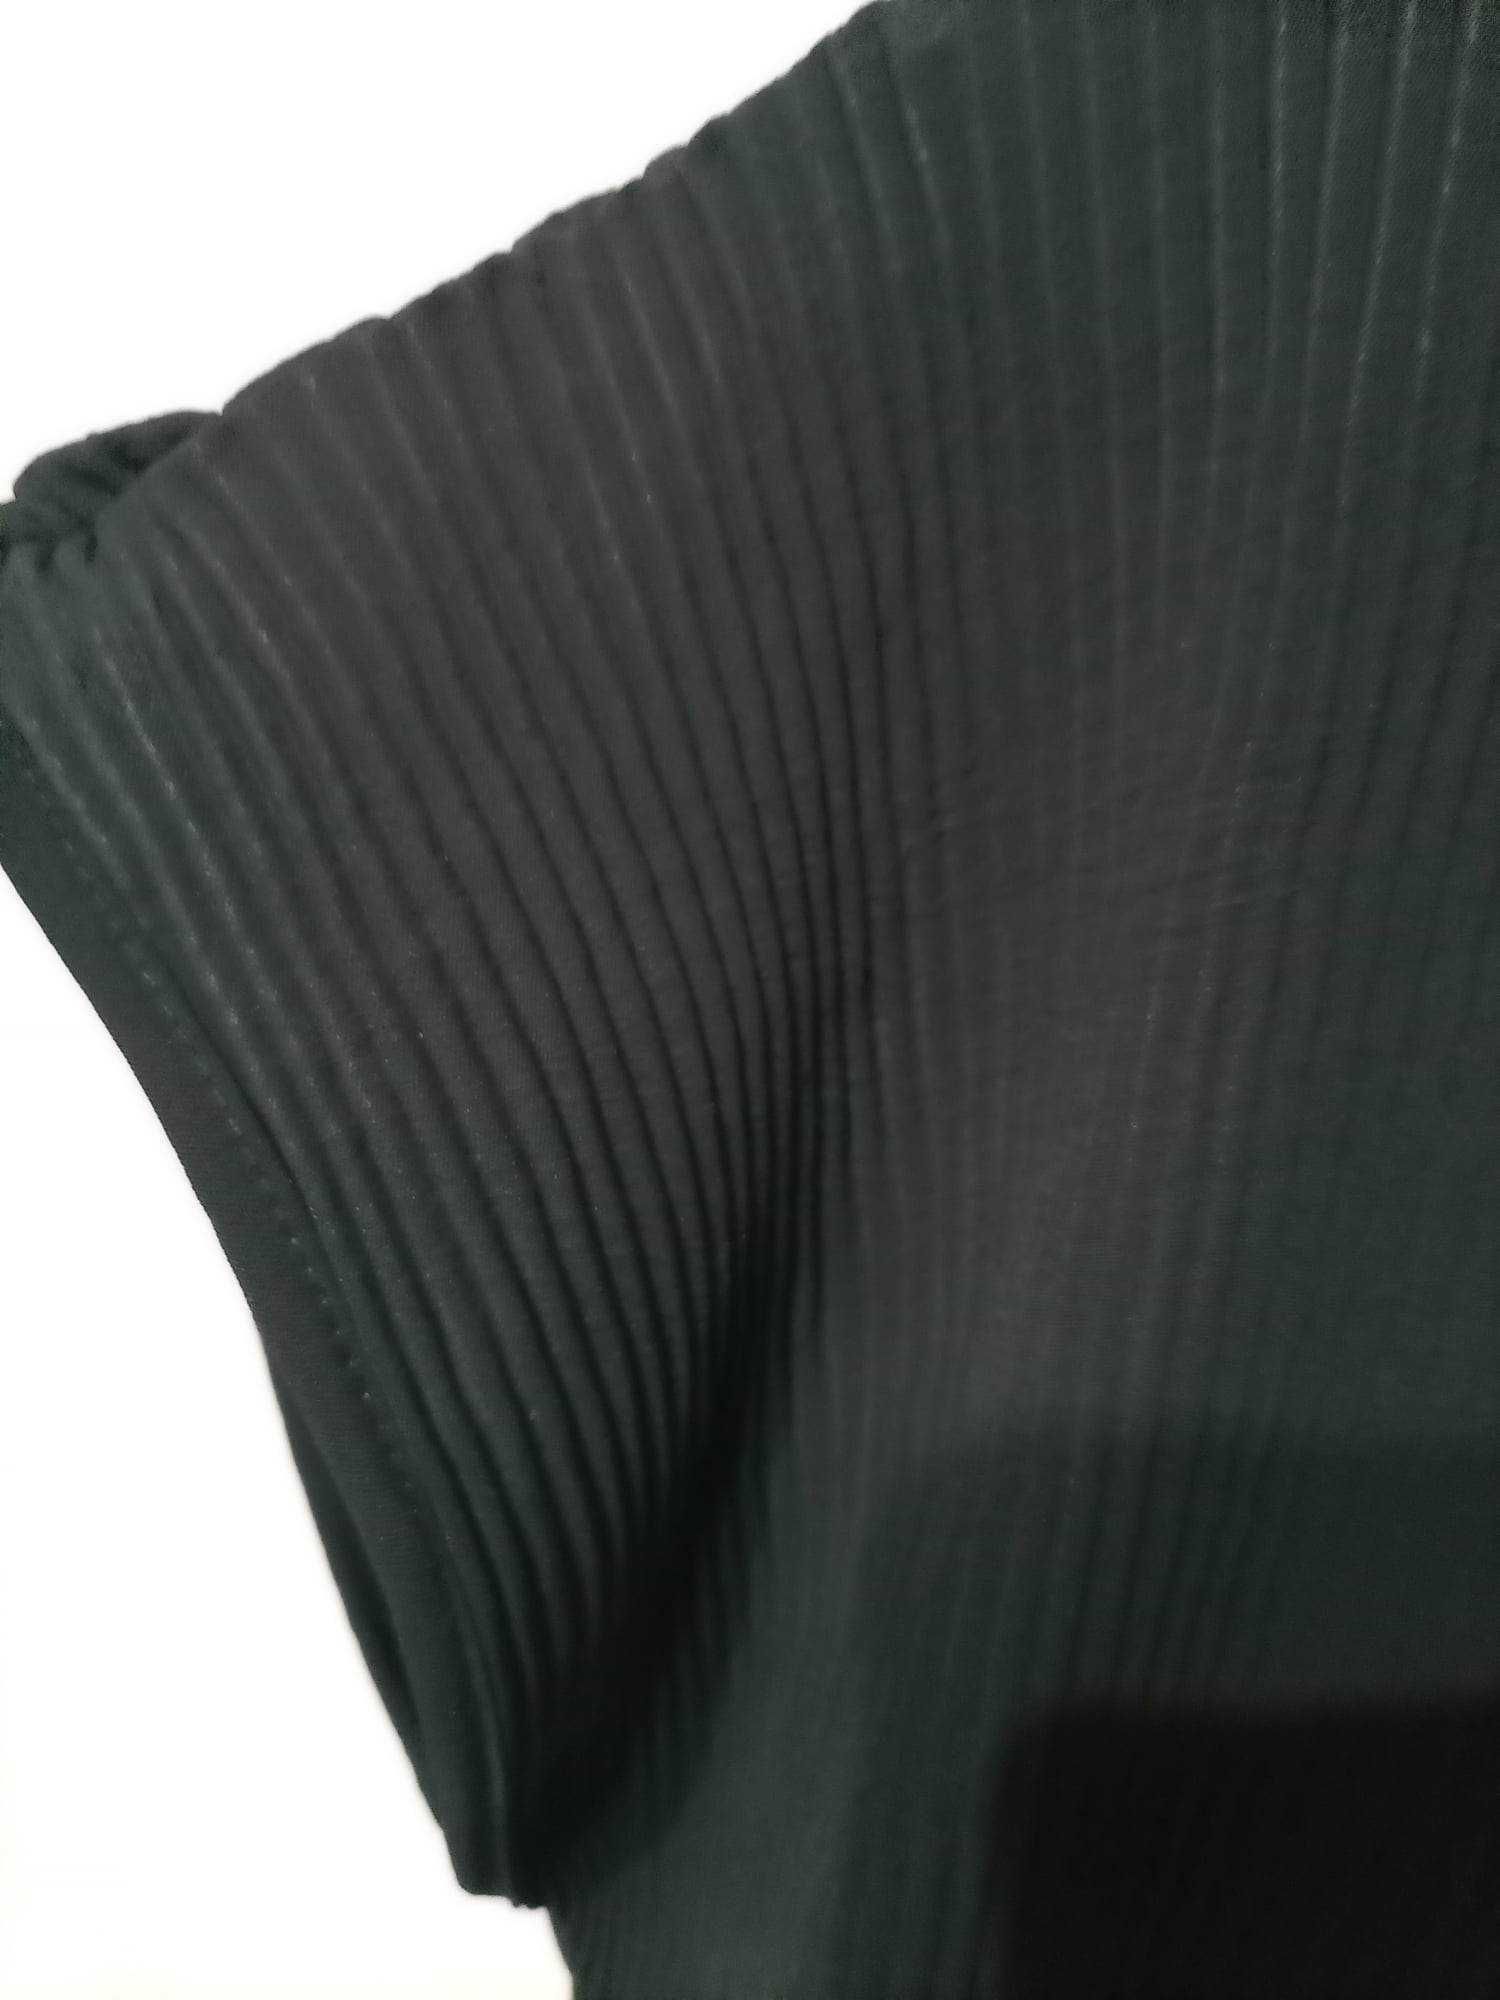 Nowa czarna elegancka bluzka Made in Italy rozmiar 38-44